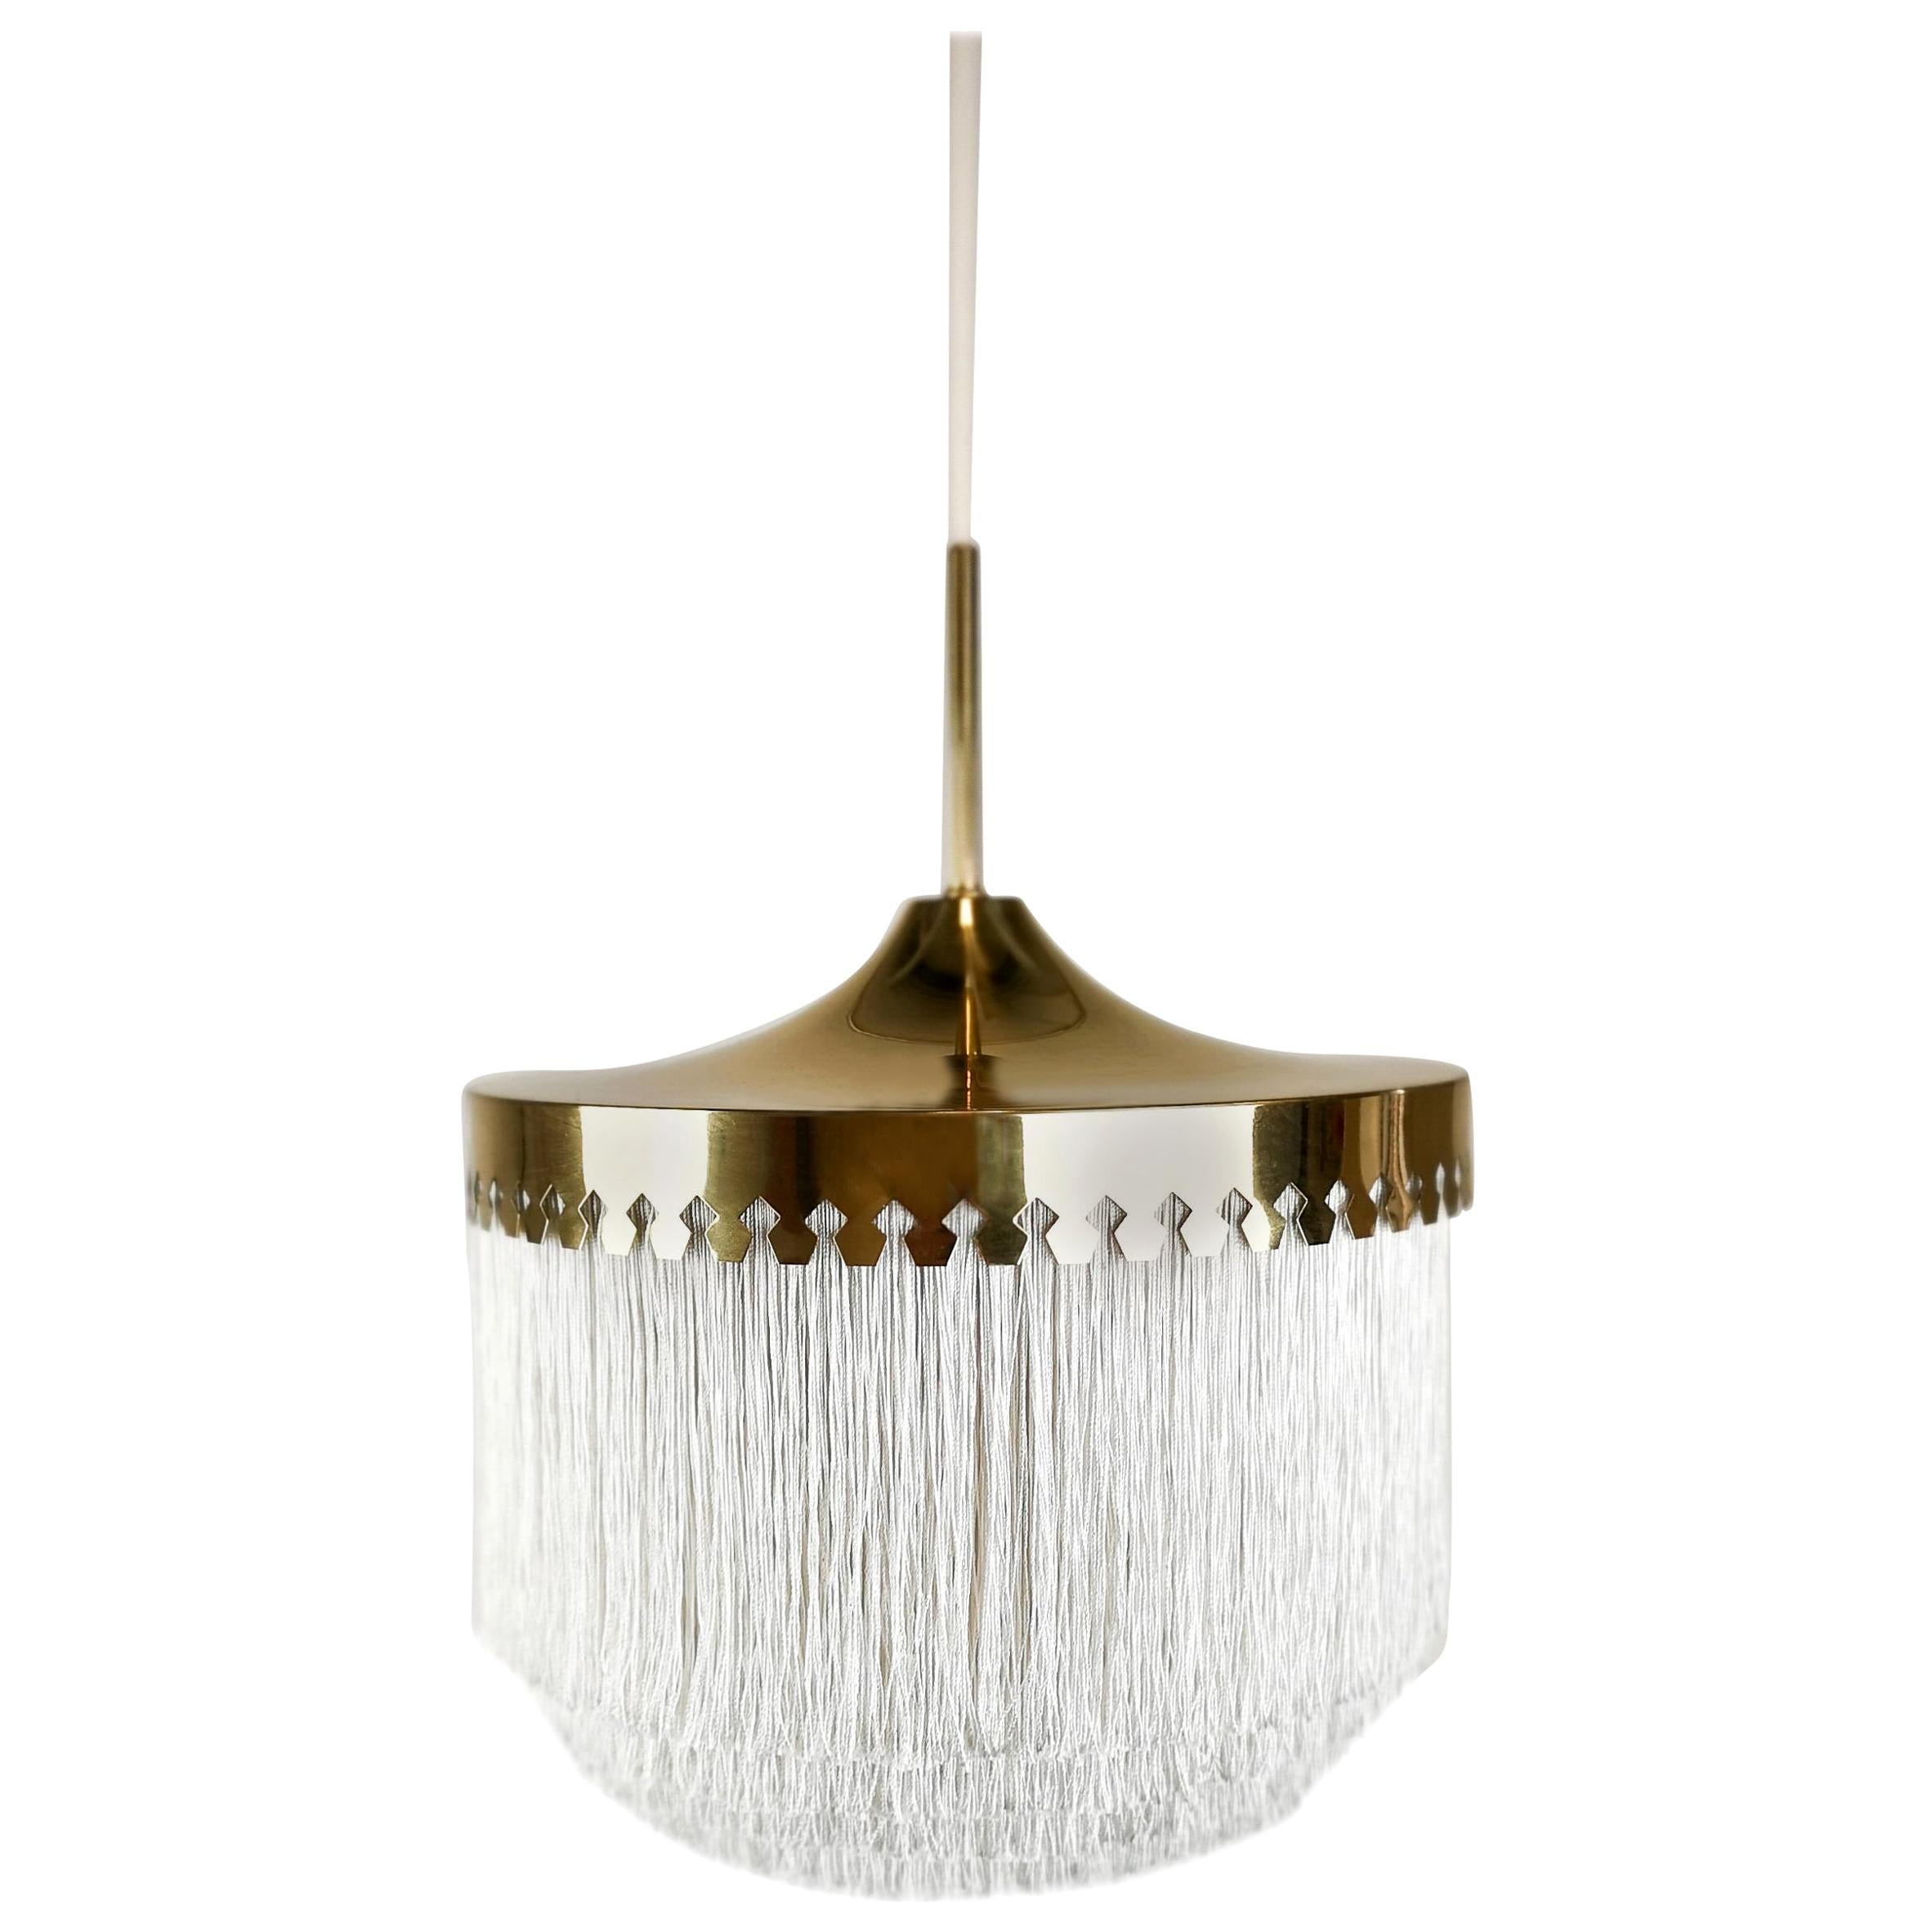 Midcentury Hans-Agne Jakobsson Ceiling Lamp Model T601, Sweden